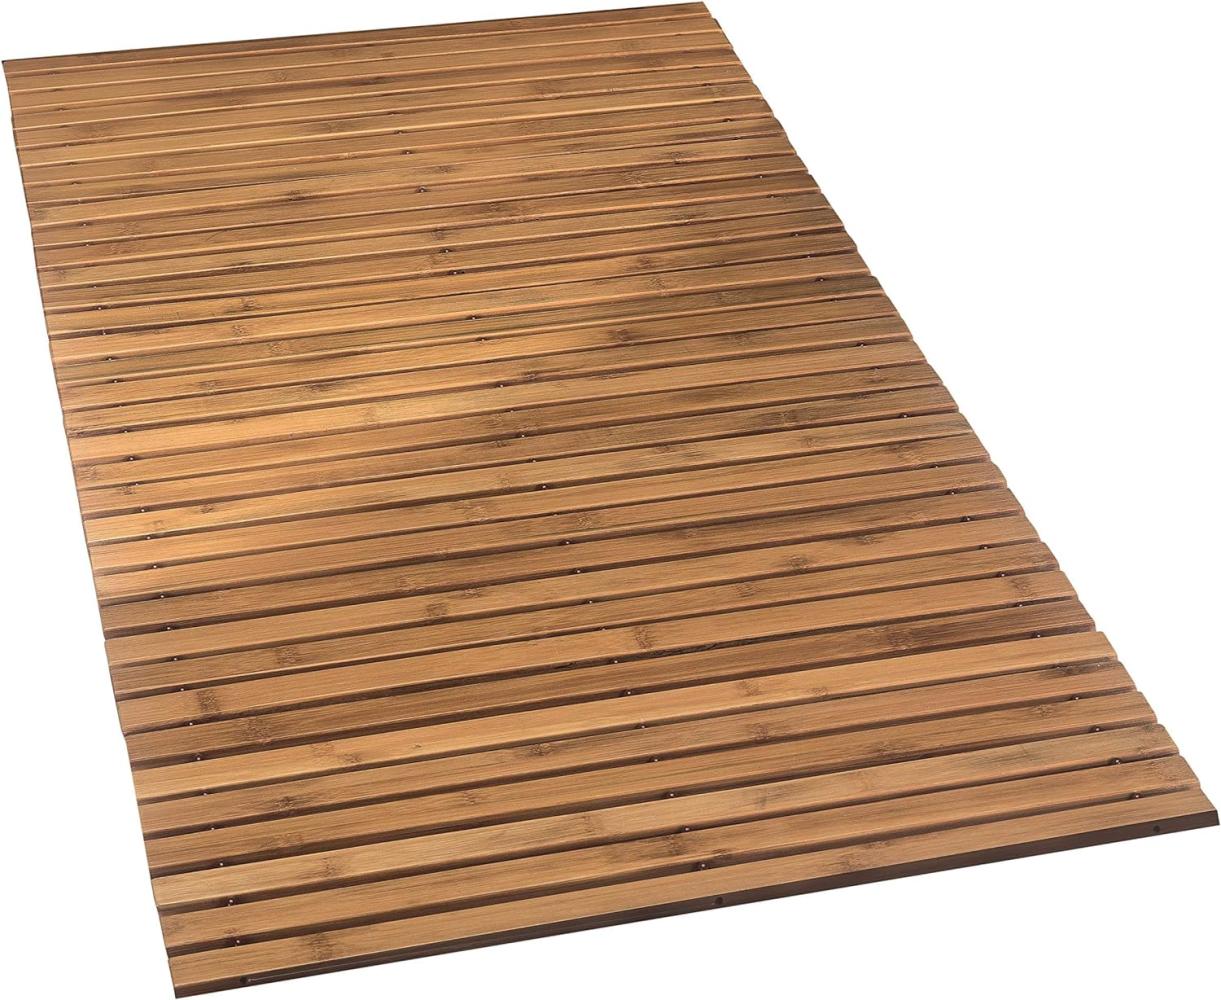 Kleine Wolke Holzmatte Level Badteppich, 100% Bambus, Natur, 115 x 60 cm, 115. 00 x 60. 00 cm, 4072202455 Bild 1